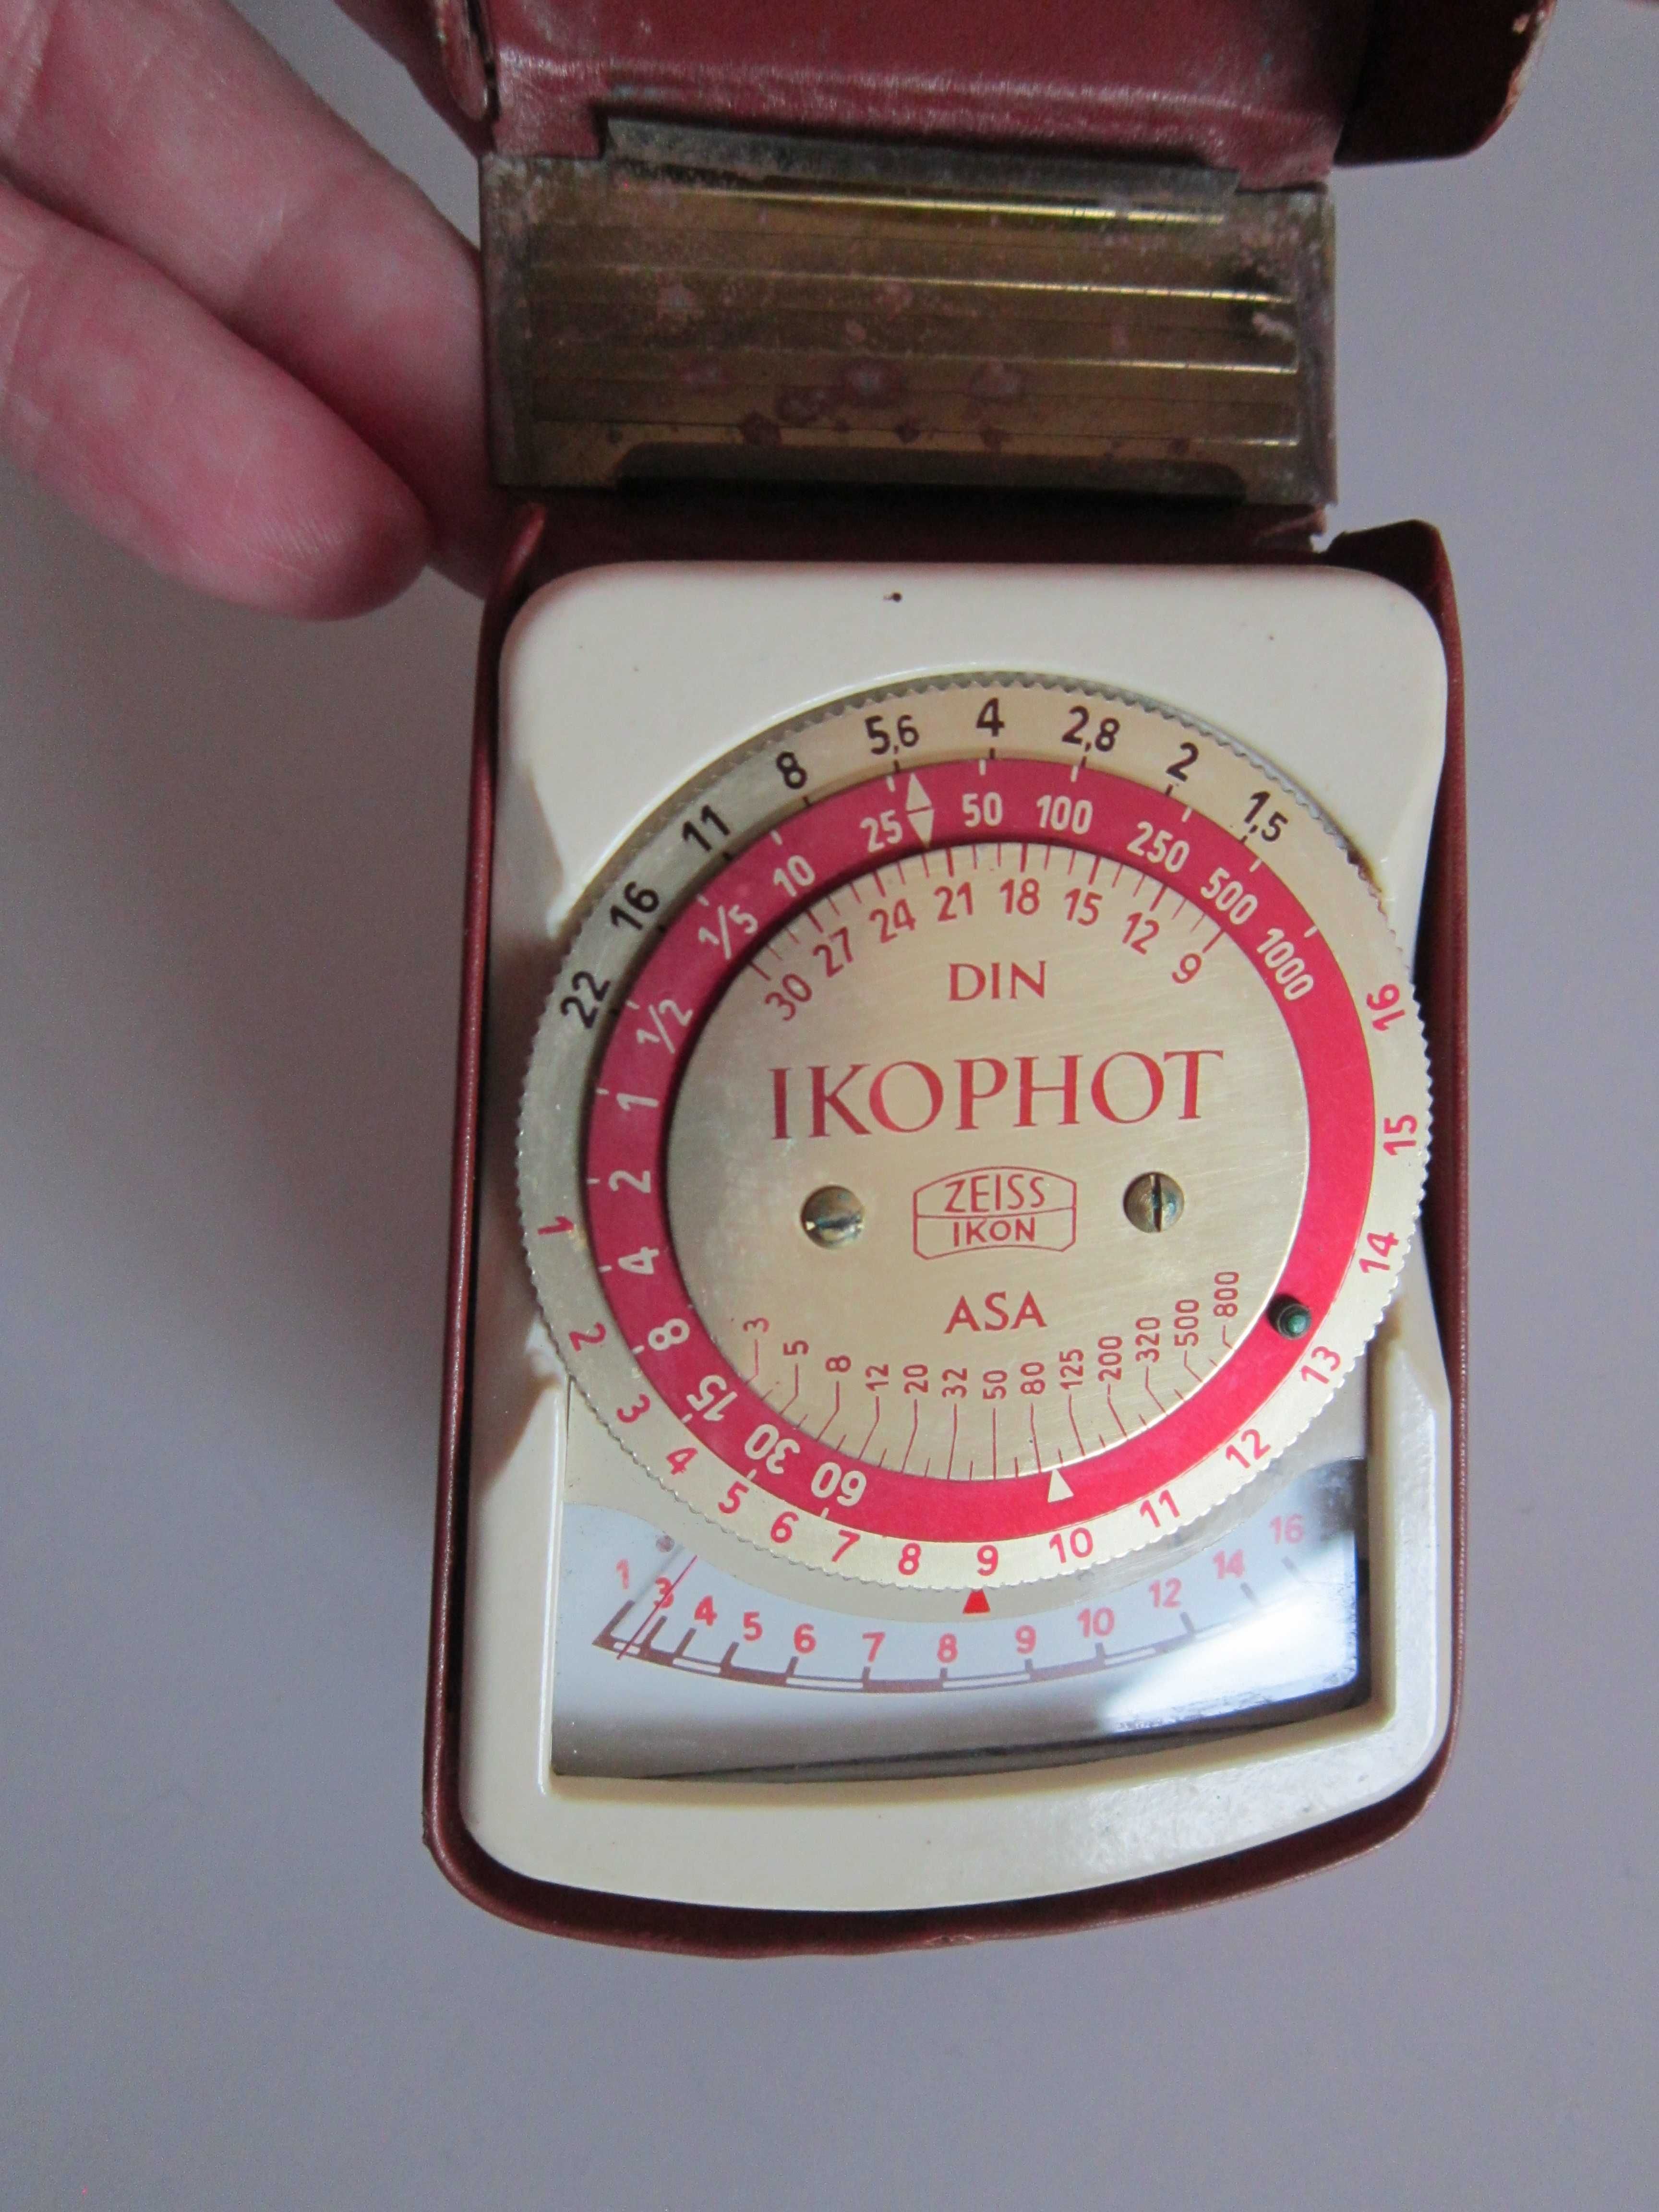 Zeiss Ikon Ikophot Selenium Exposure Light Meter original Germany'50